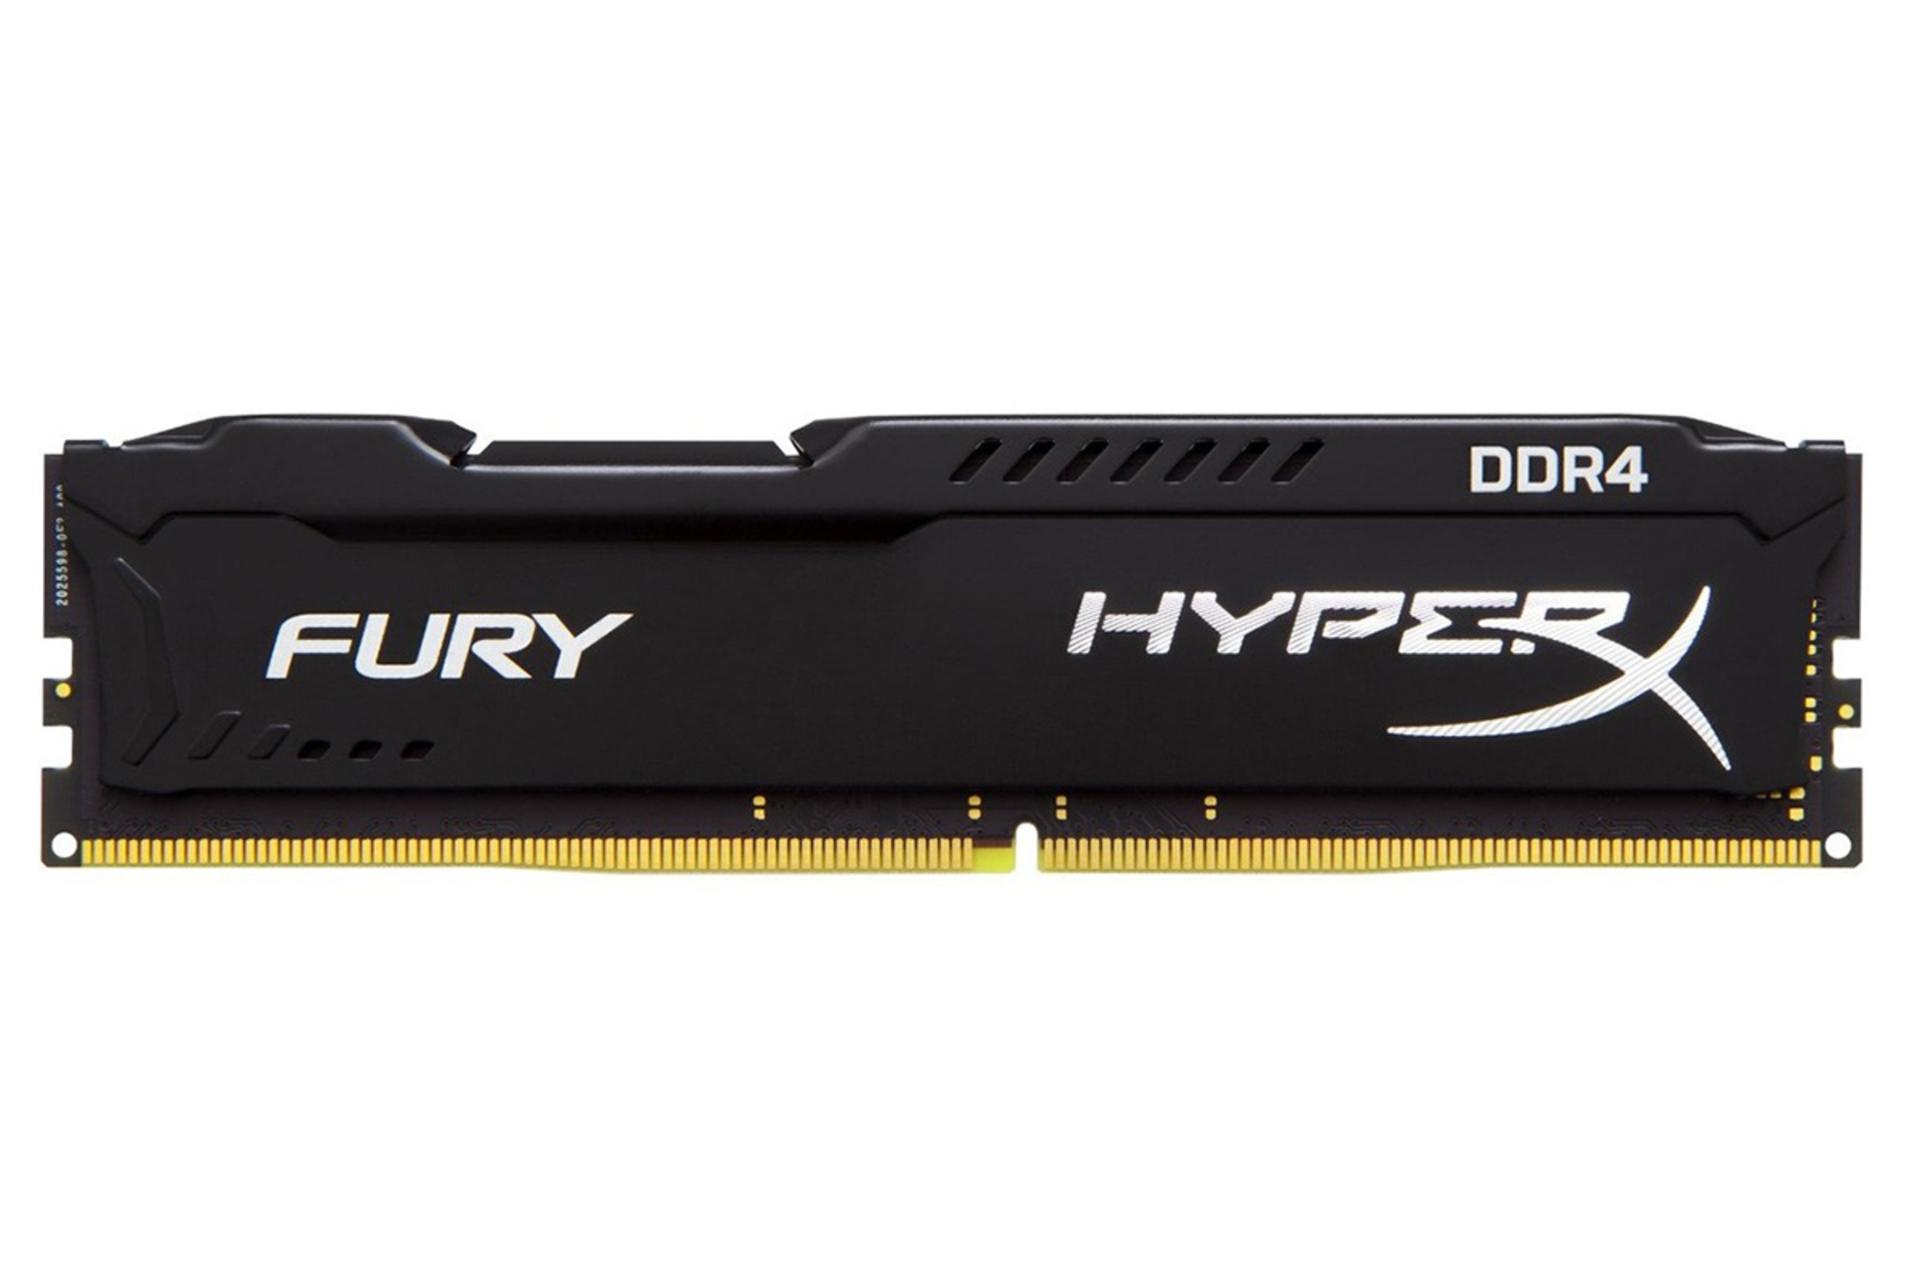 نمای جلورم هایپرایکس Fury ظرفیت 4 گیگابایت از نوع DDR4-2400